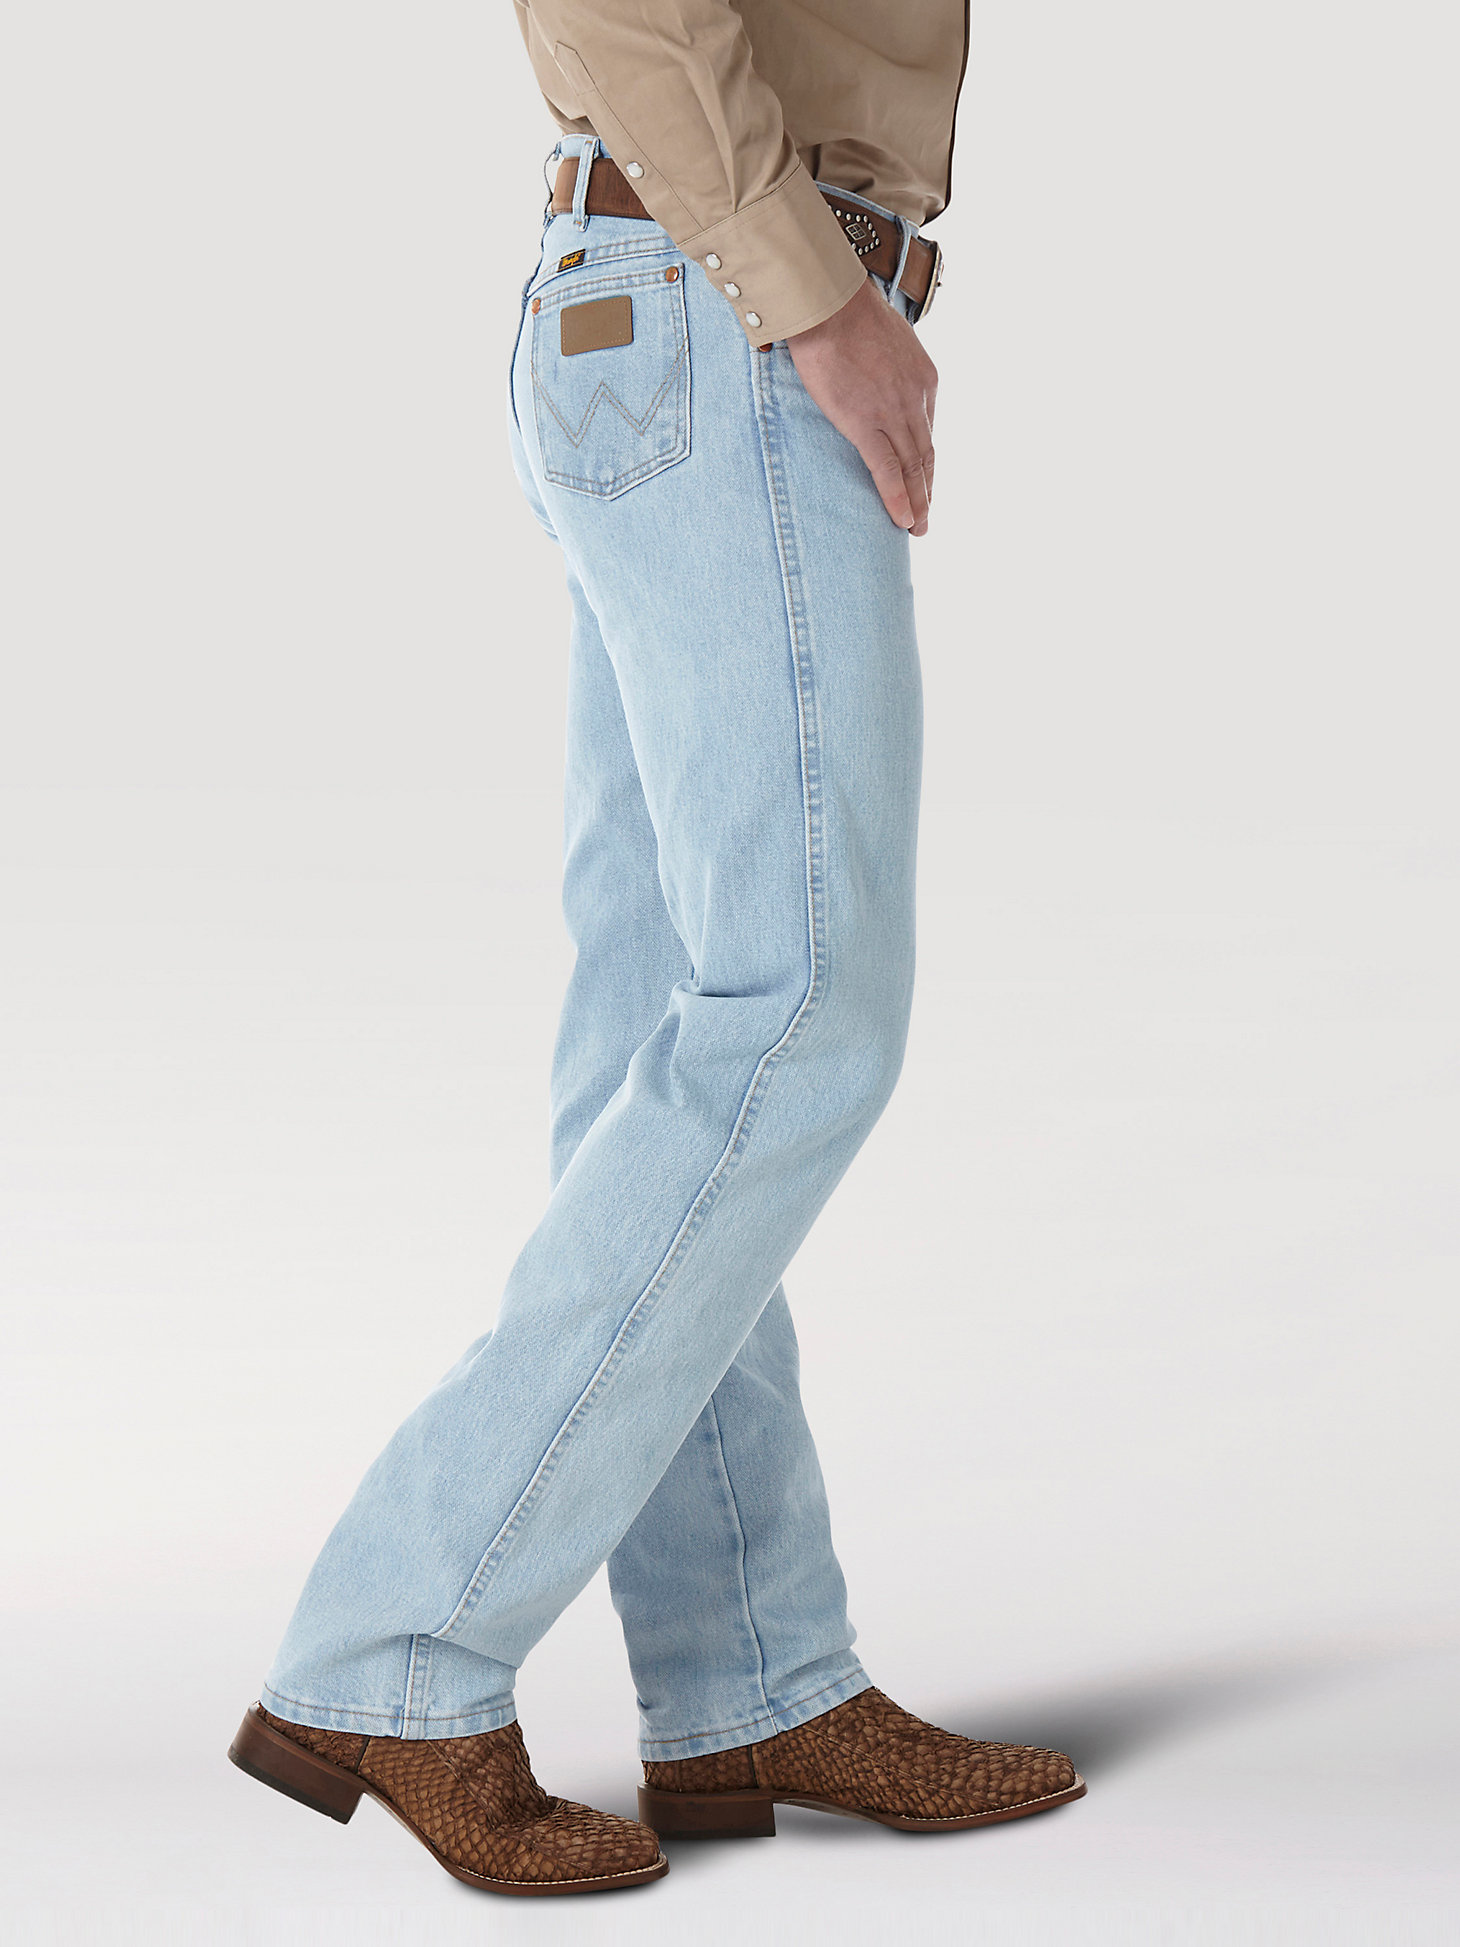 Wrangler® Cowboy Cut® Original Fit Jean in Bleach alternative view 4